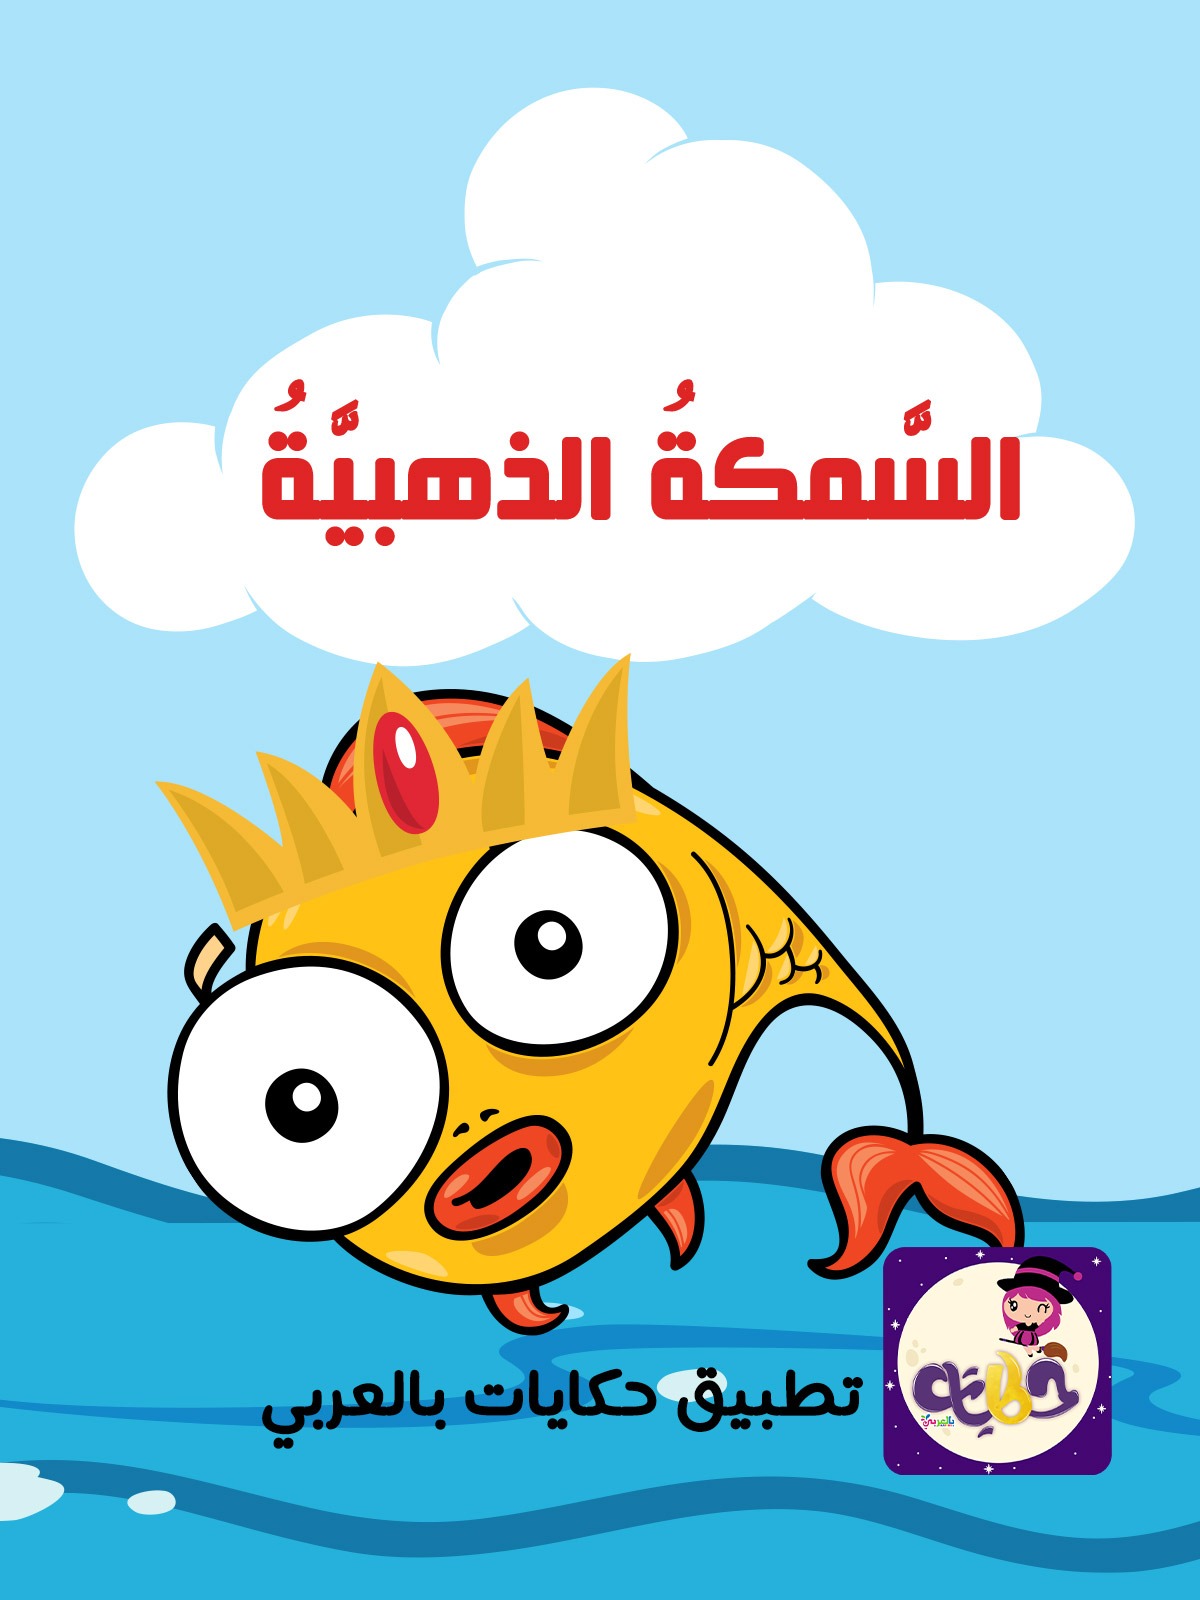 قصة السمكة الذهبية بتطبيق قصص وحكايات بالعربي قصص تربوية هادفة للاطفال